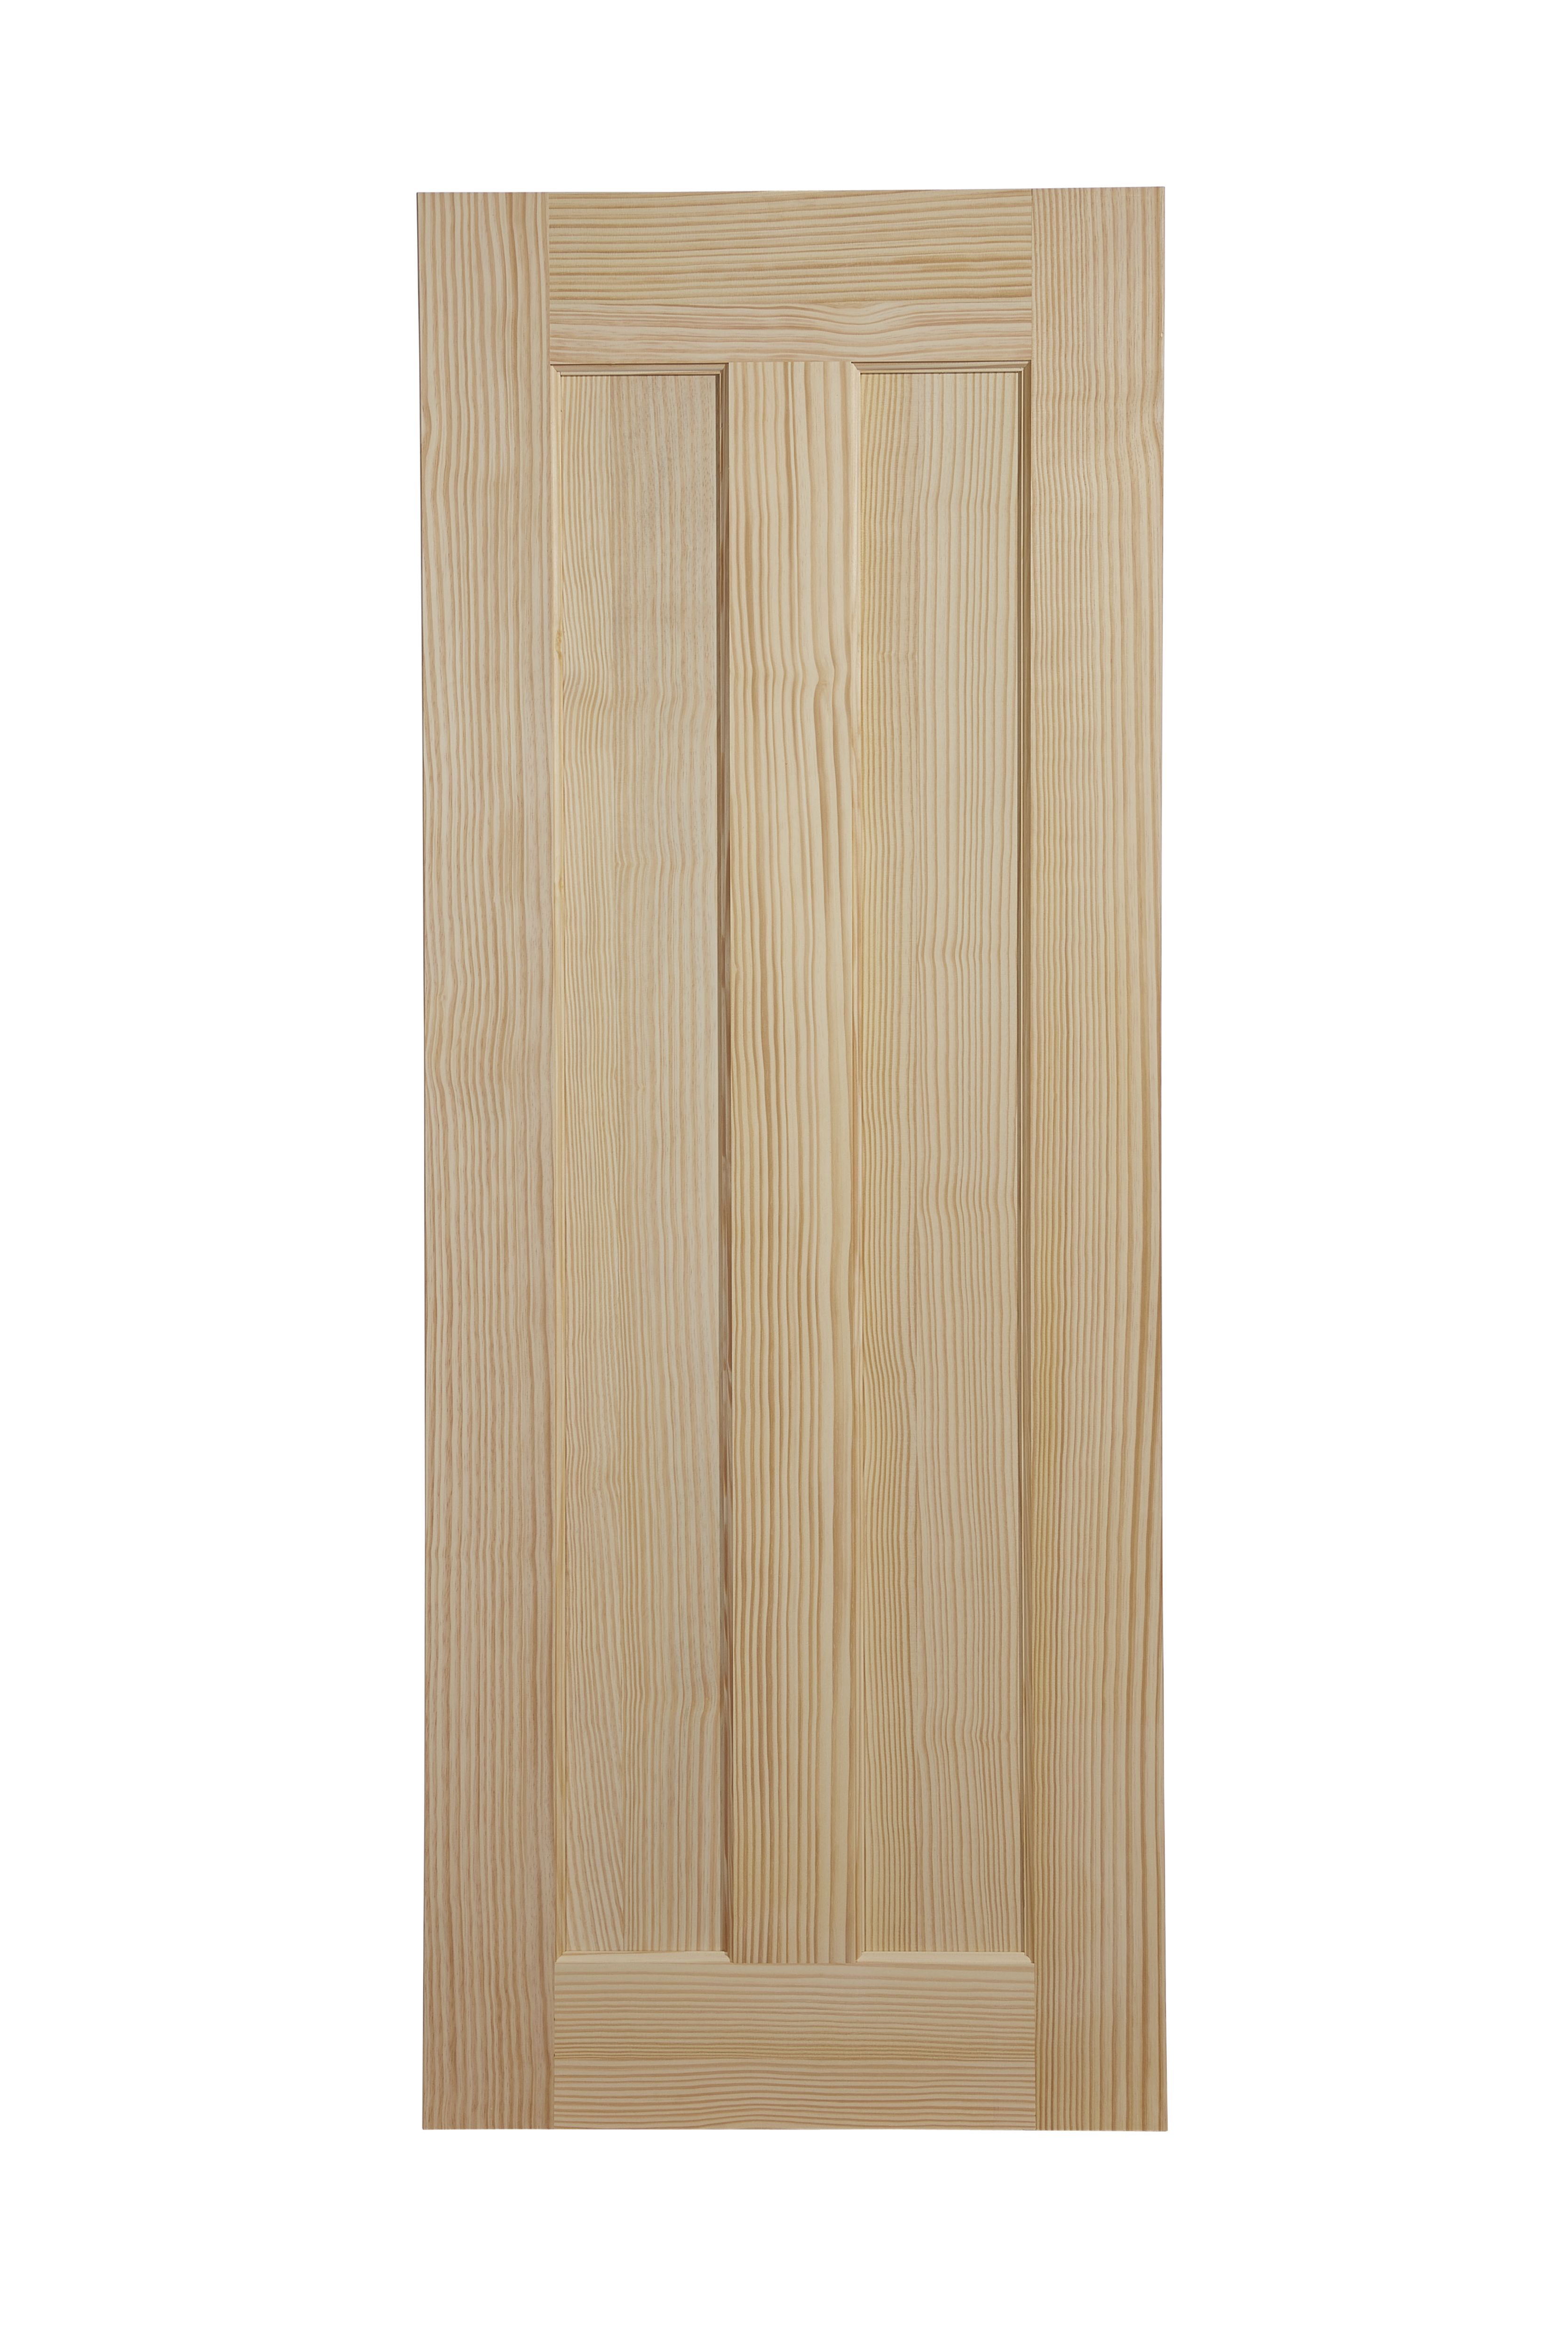 Vertical 2 panel Unglazed Internal Door, (H)1981mm (W)686mm (T)35mm